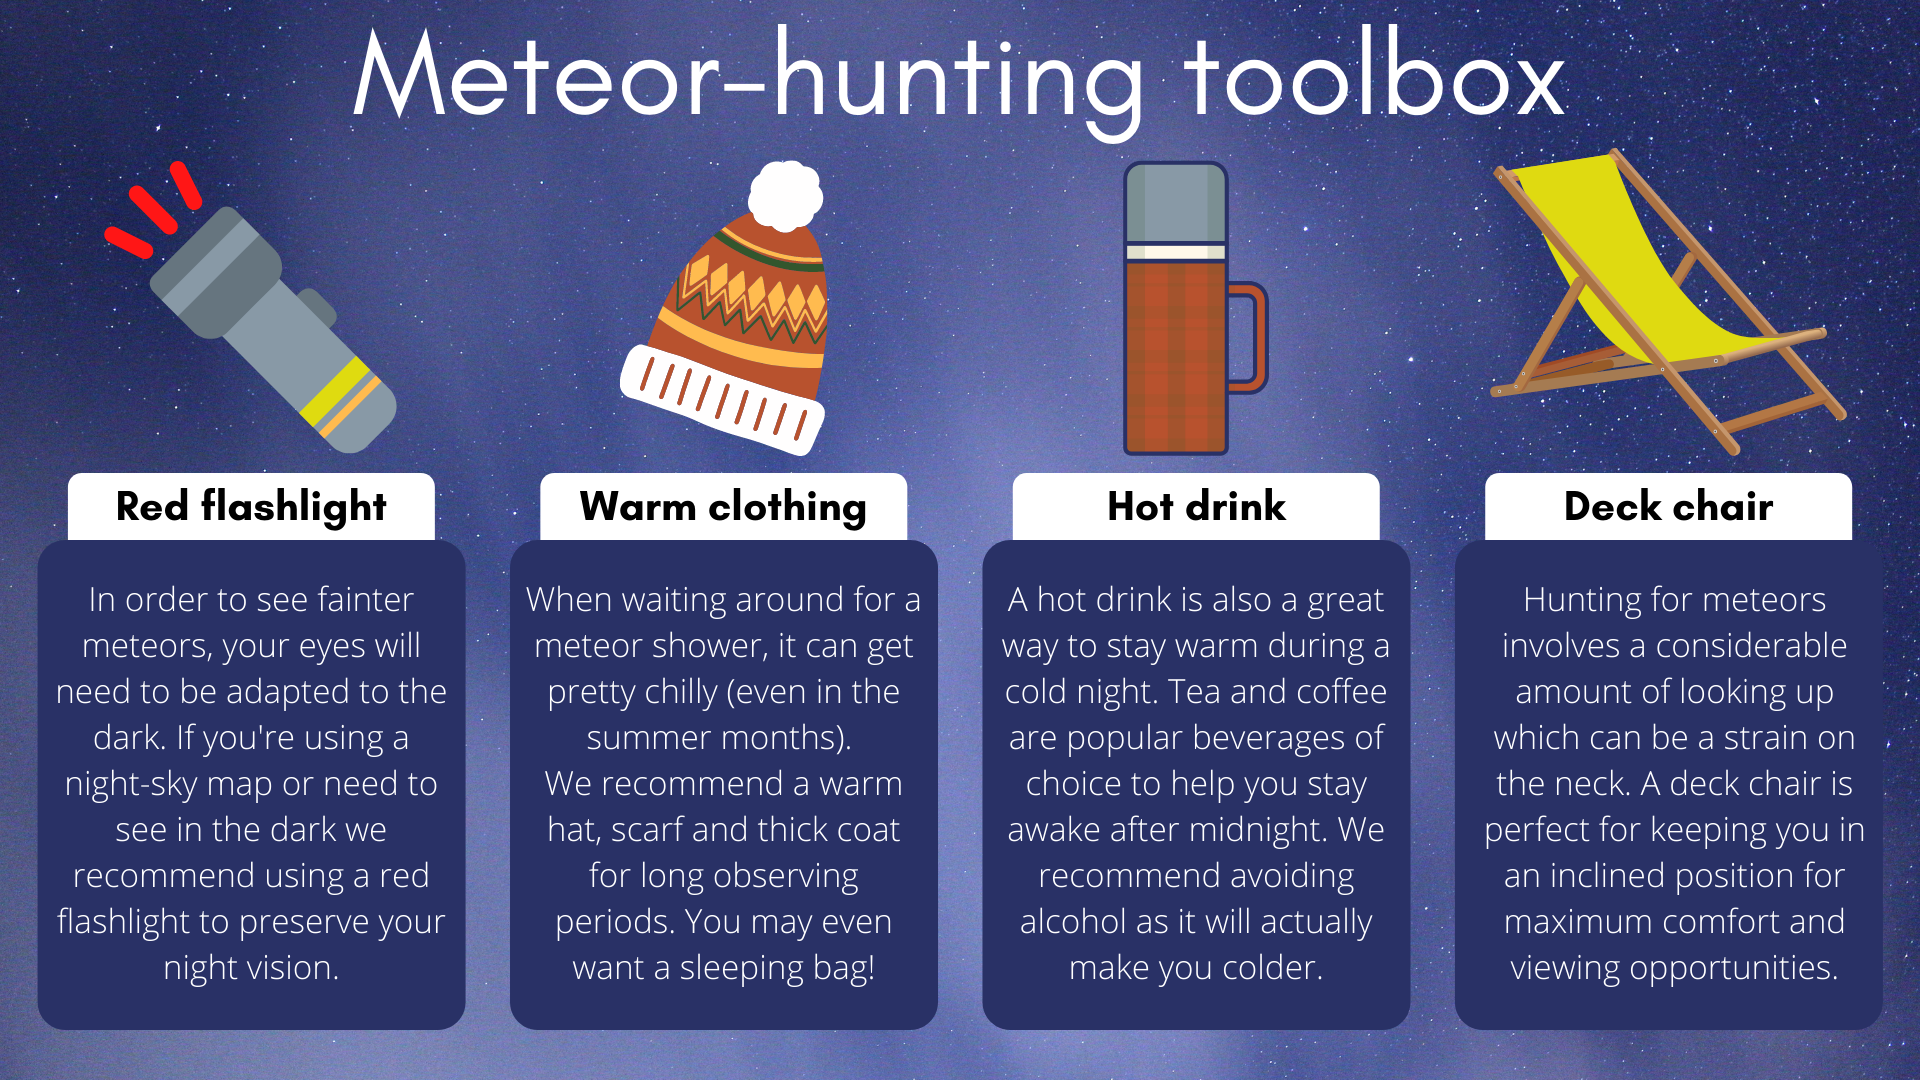 Aby uzyskać doskonałe wrażenia z polowania na meteory, będziesz potrzebować referencyjnej latarki, ciepłej odzieży, gorącego napoju i ładnego leżaka.